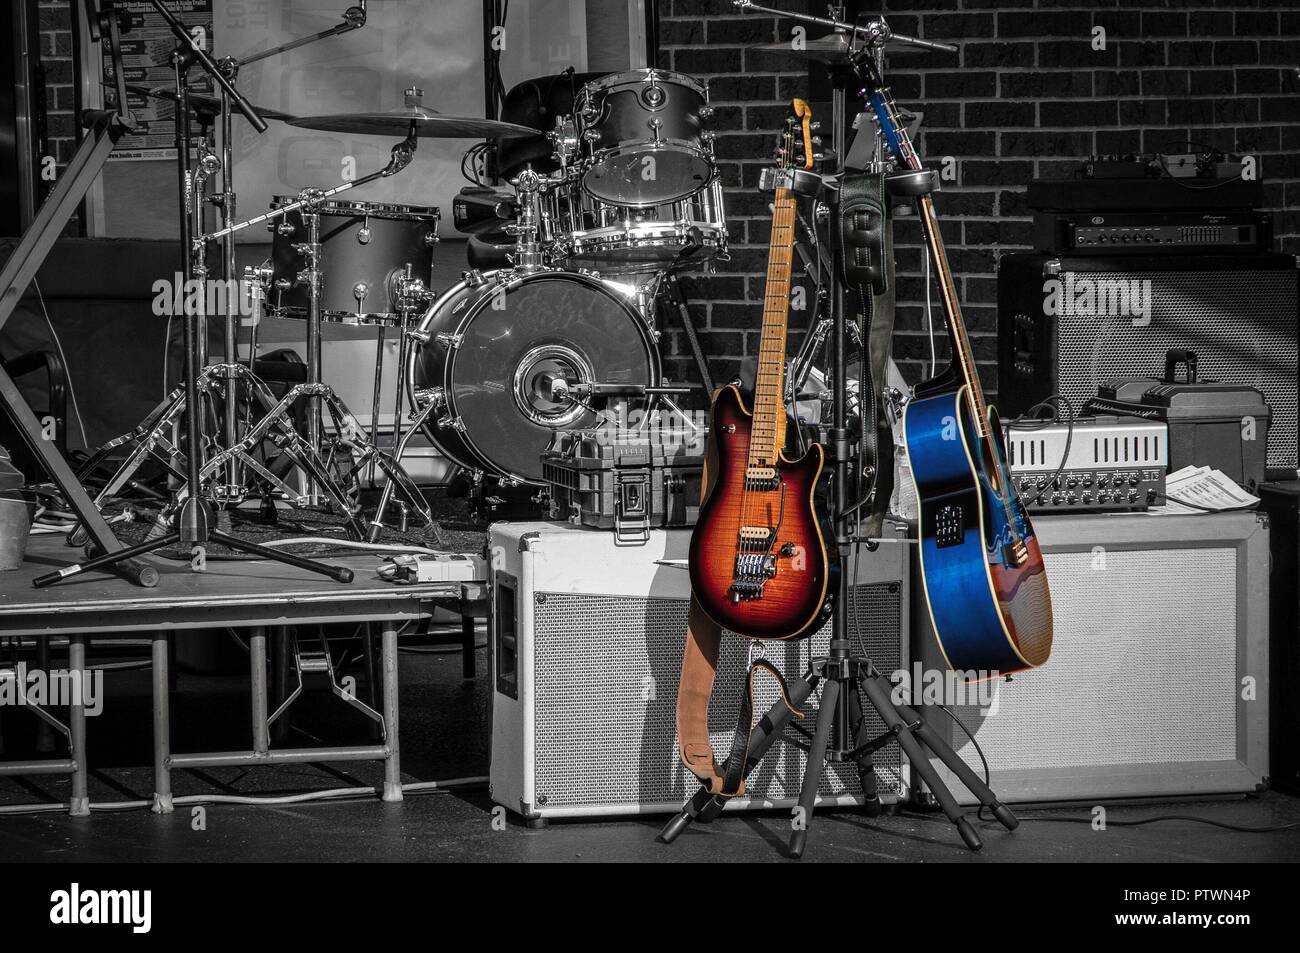 Image de haut-parleurs, guitares, batteries et autres matériel de musique assis sur une scène sans band Banque D'Images